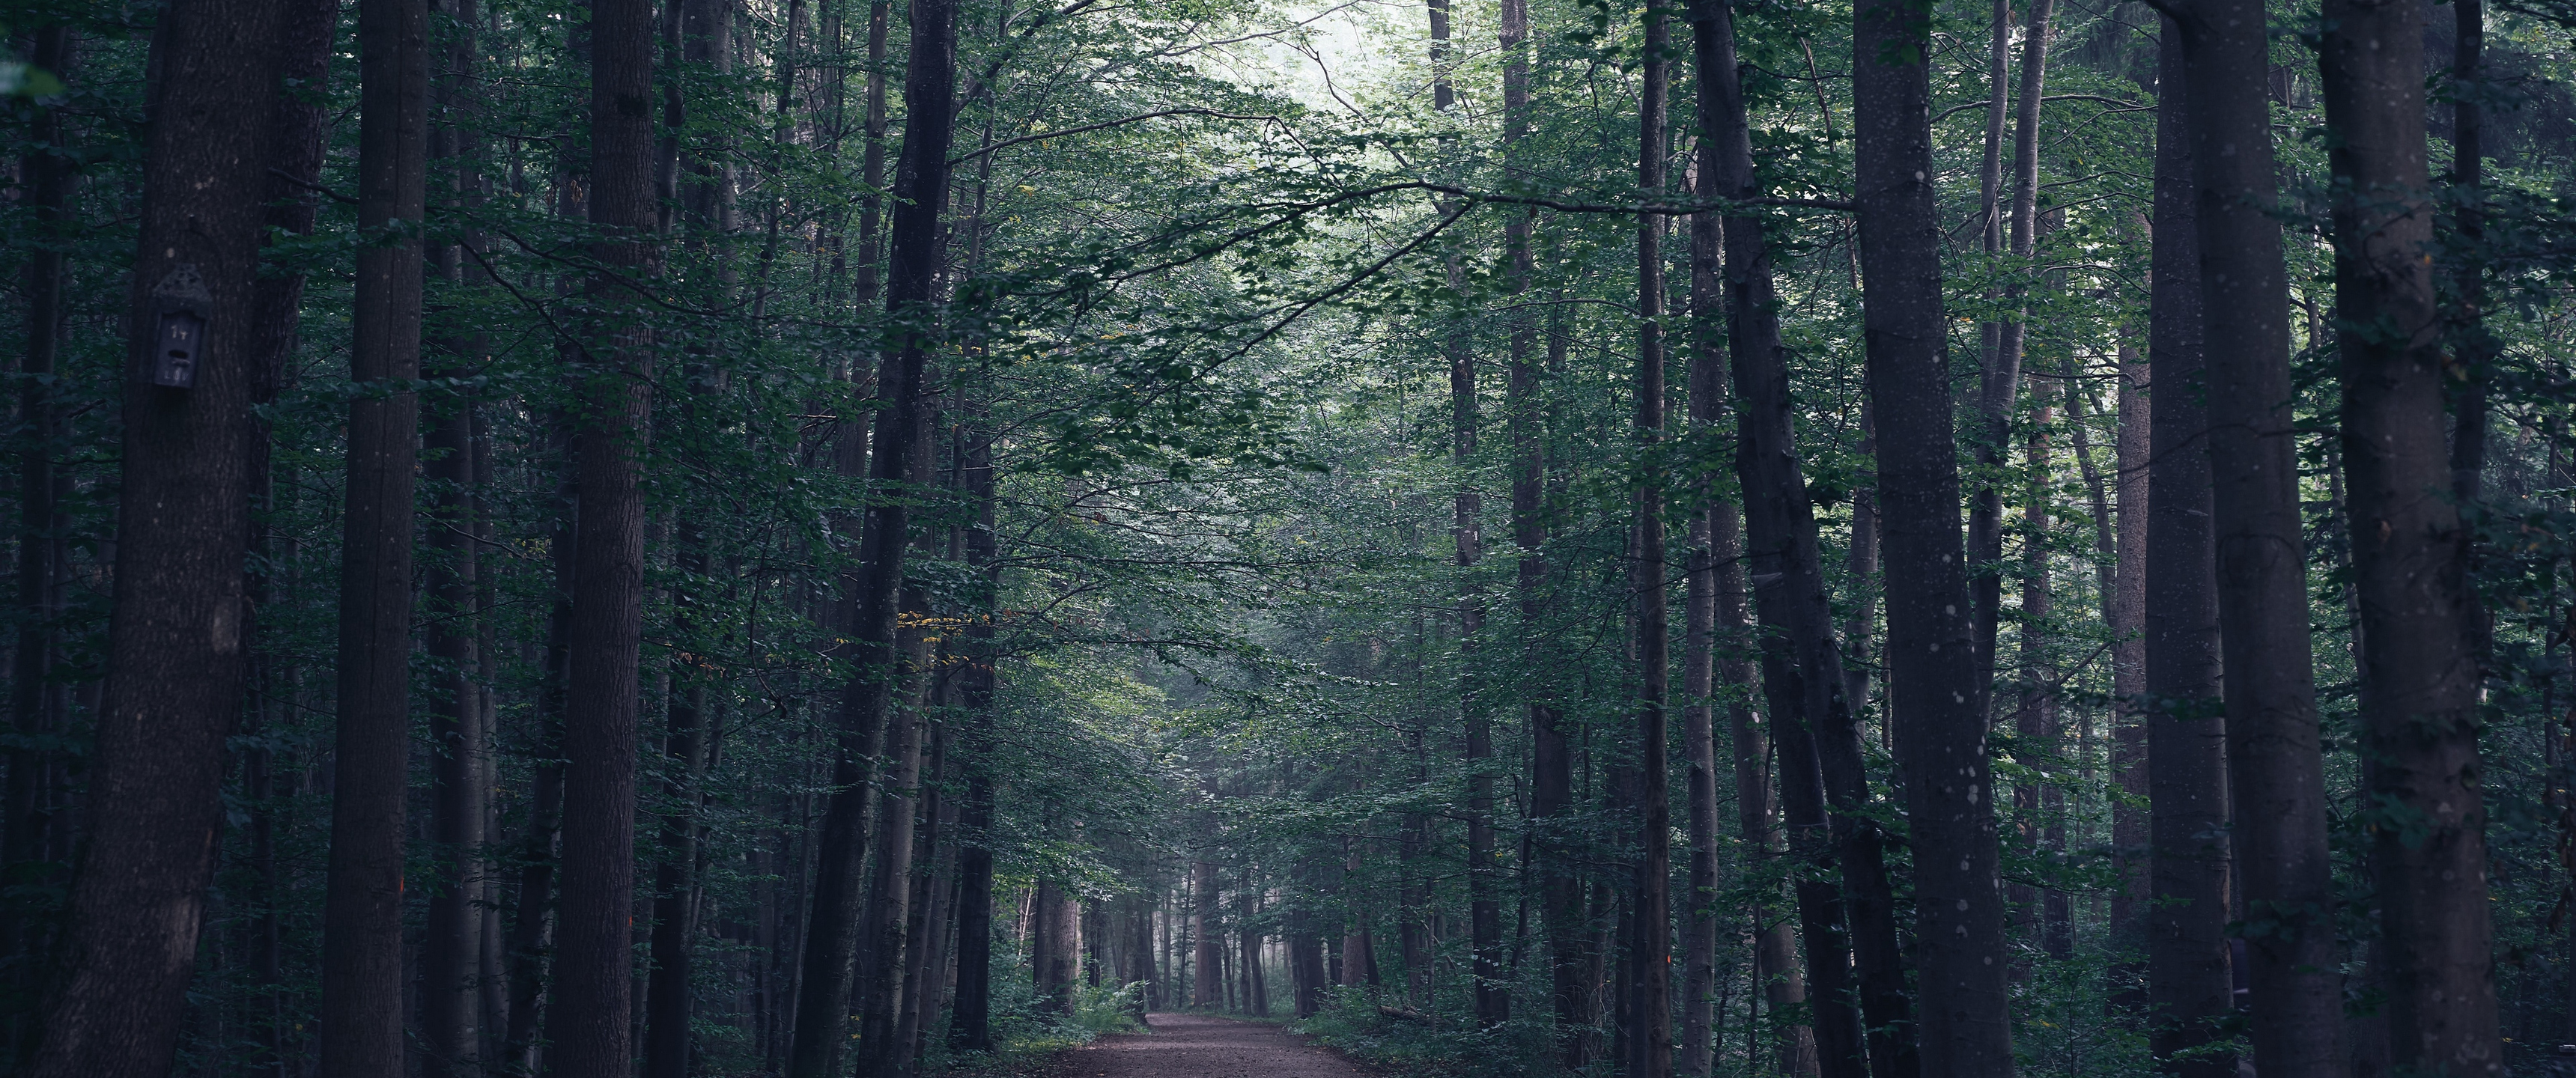 Những hàng cây rợp bóng trên đường rừng, tiếng chim hót râm ran cùng với tán lá xanh tươi biết mấy, sẽ đưa bạn xuyên suốt một không gian ngập tràn thiên nhiên. Với giấy dán tường hình ảnh rừng, bạn sẽ được thổi bớt những hơi thở phải, những lo toan trong cuộc sống, cùng với đó là sự thoải mái đầy thoải mái khi tự do tận hưởng một không gian xanh mát.